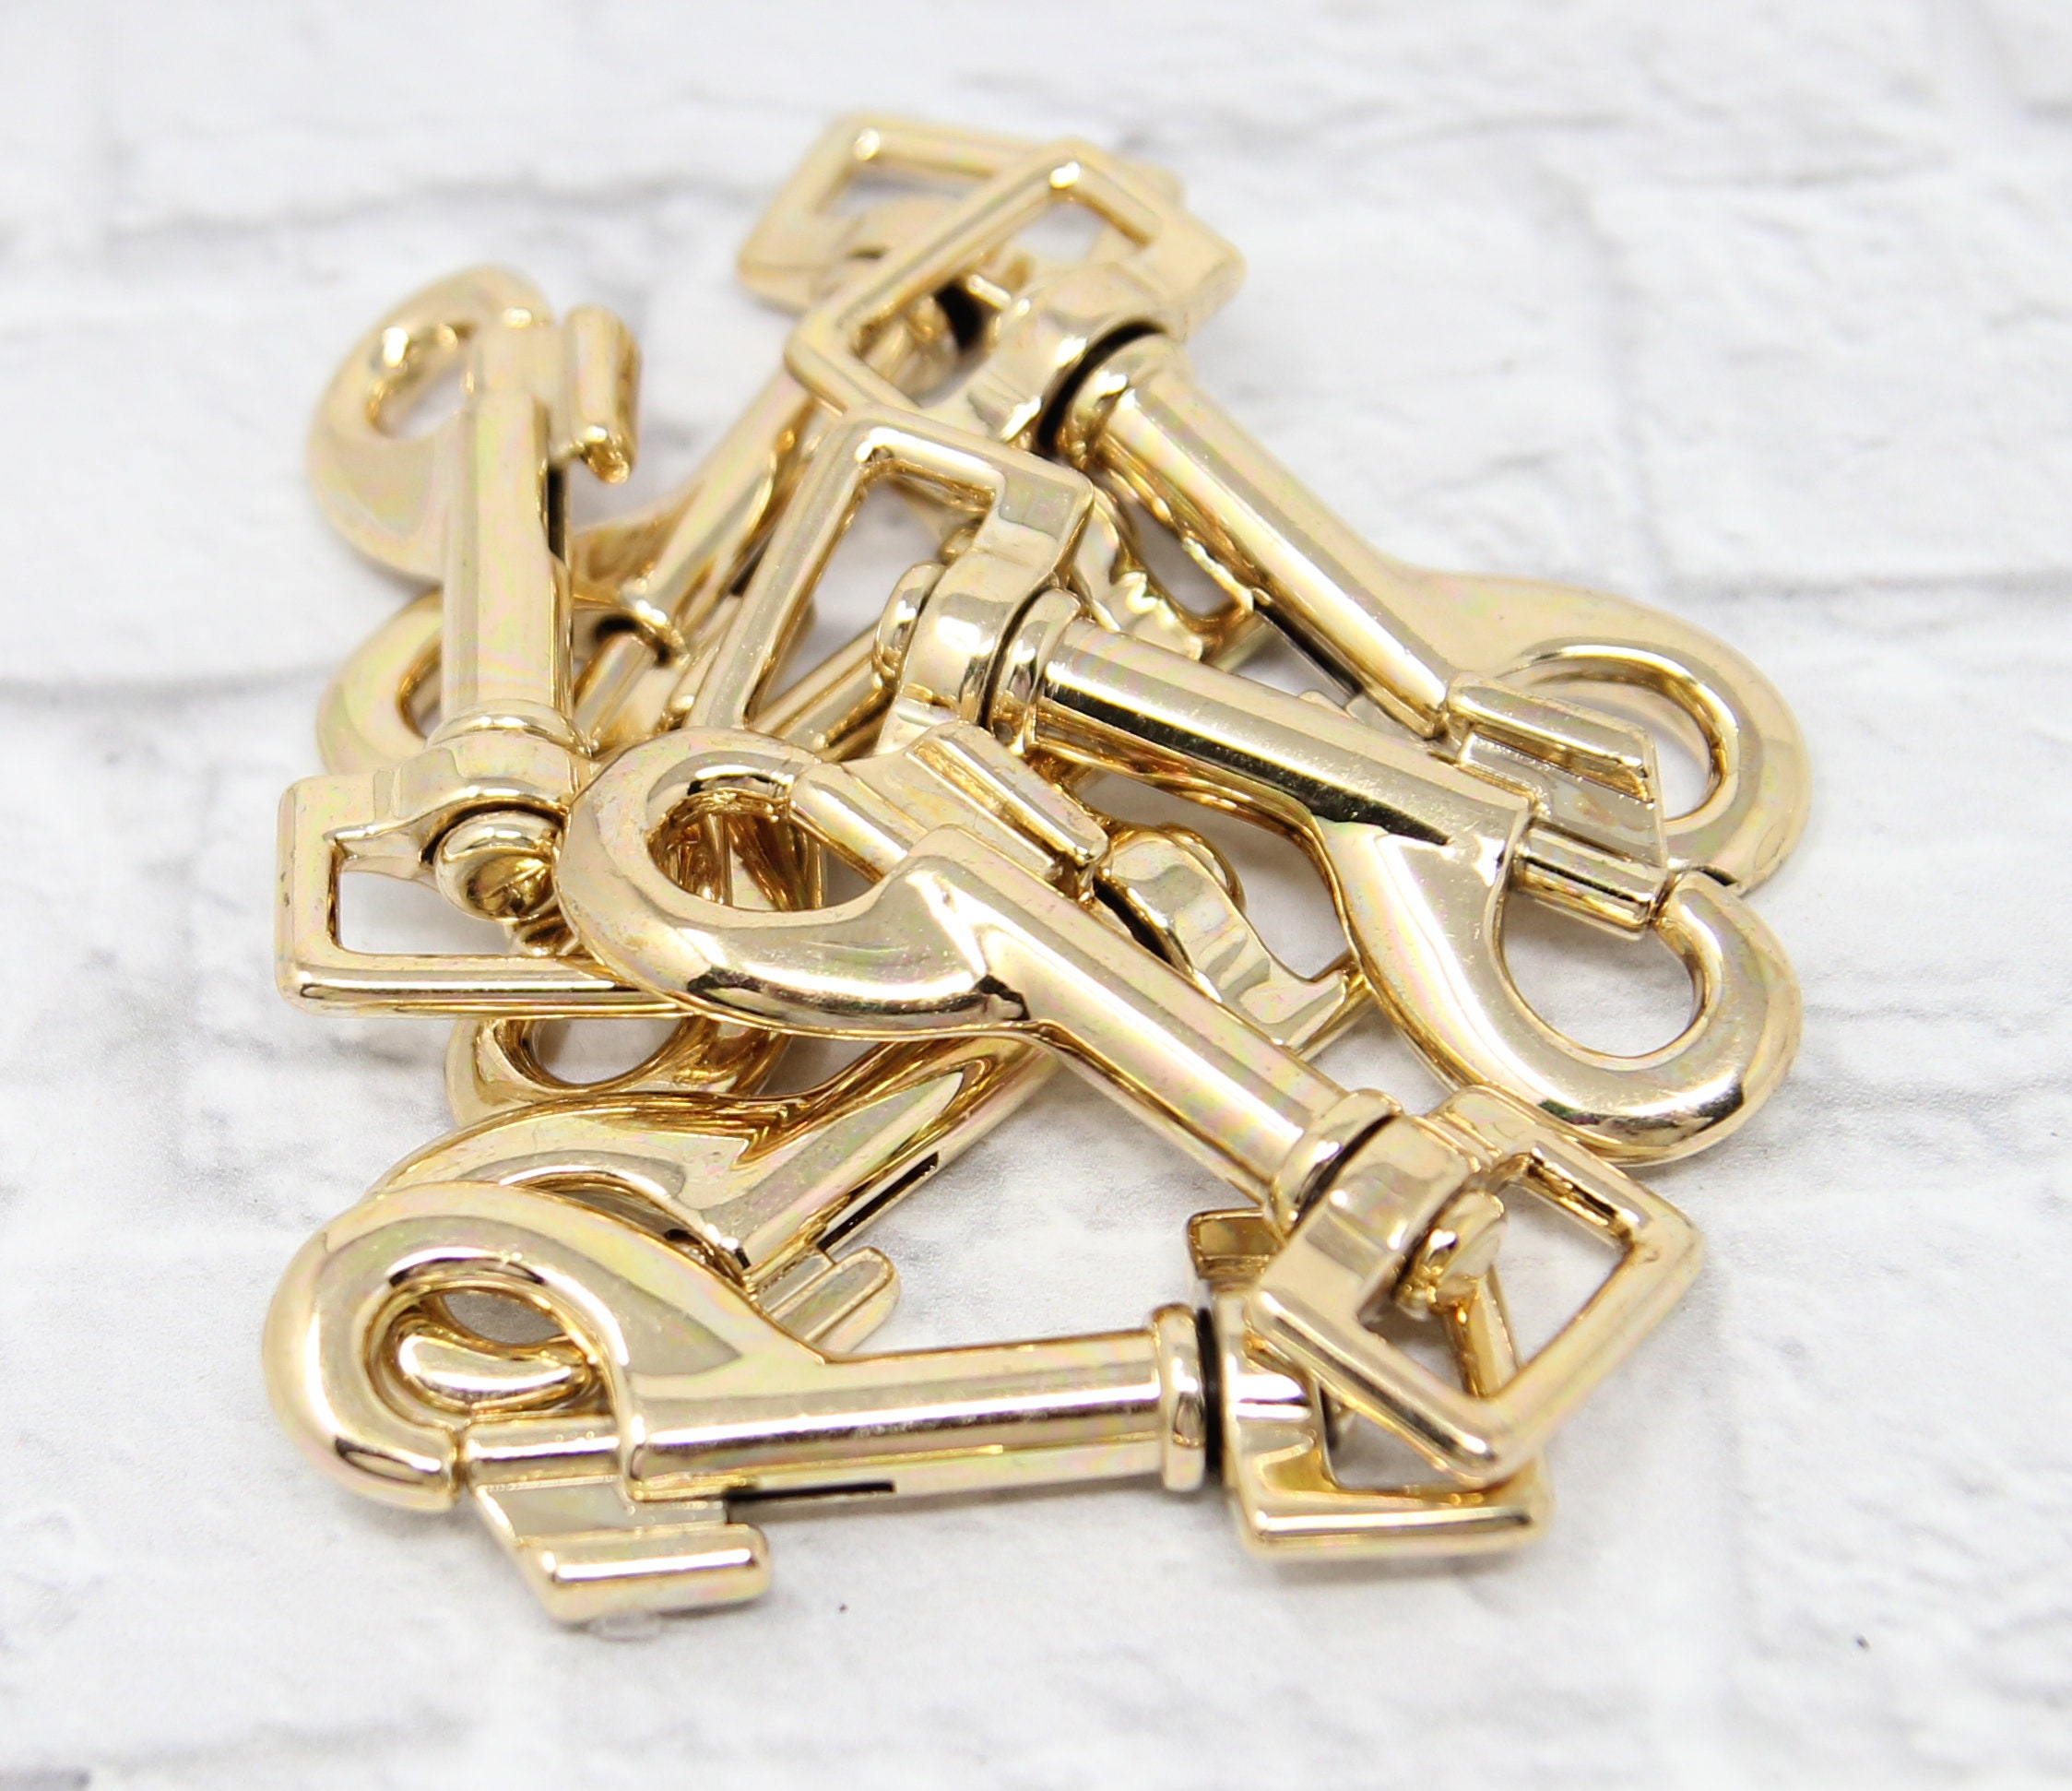 Brass Swivel Snap Hook 3/4 inch | Pet Hardware | Leash Hook | Bolt Snaphook  | Swivel Snap Hook | Square Eye | Brass Plated Zinc